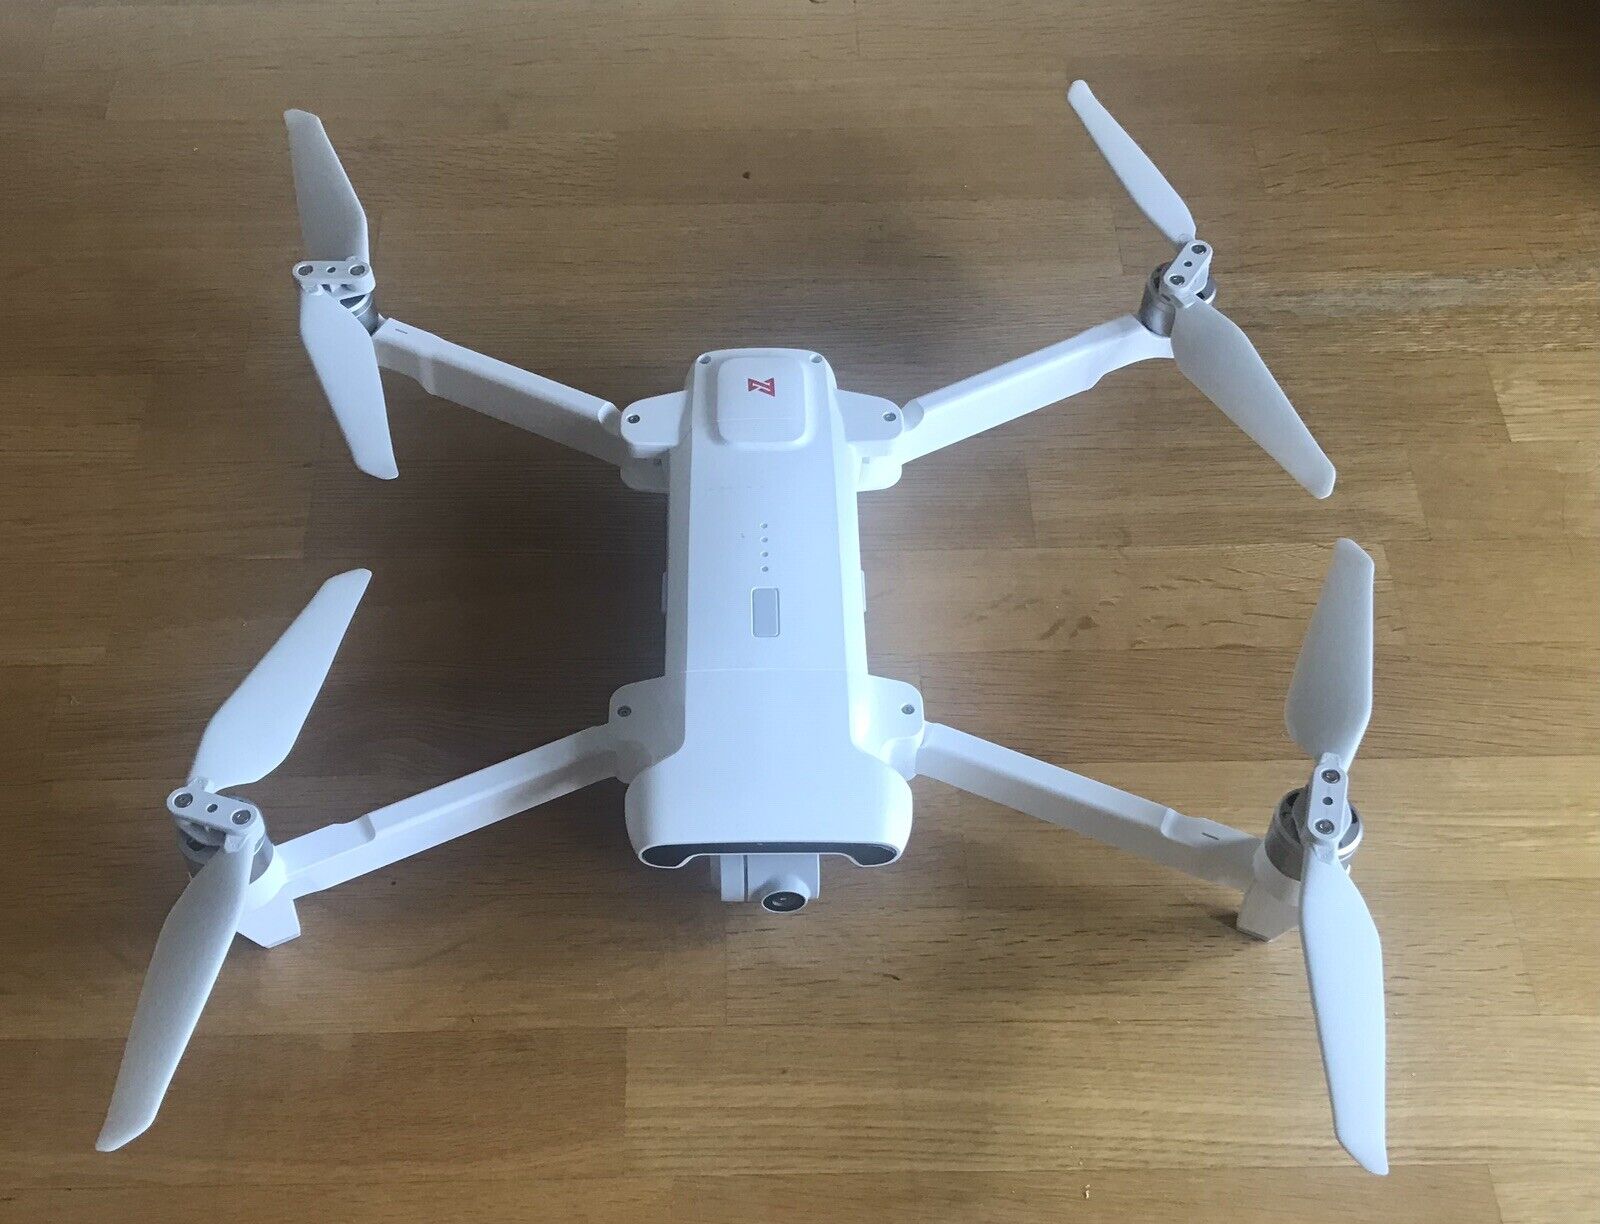 fimi x8 2020 drone